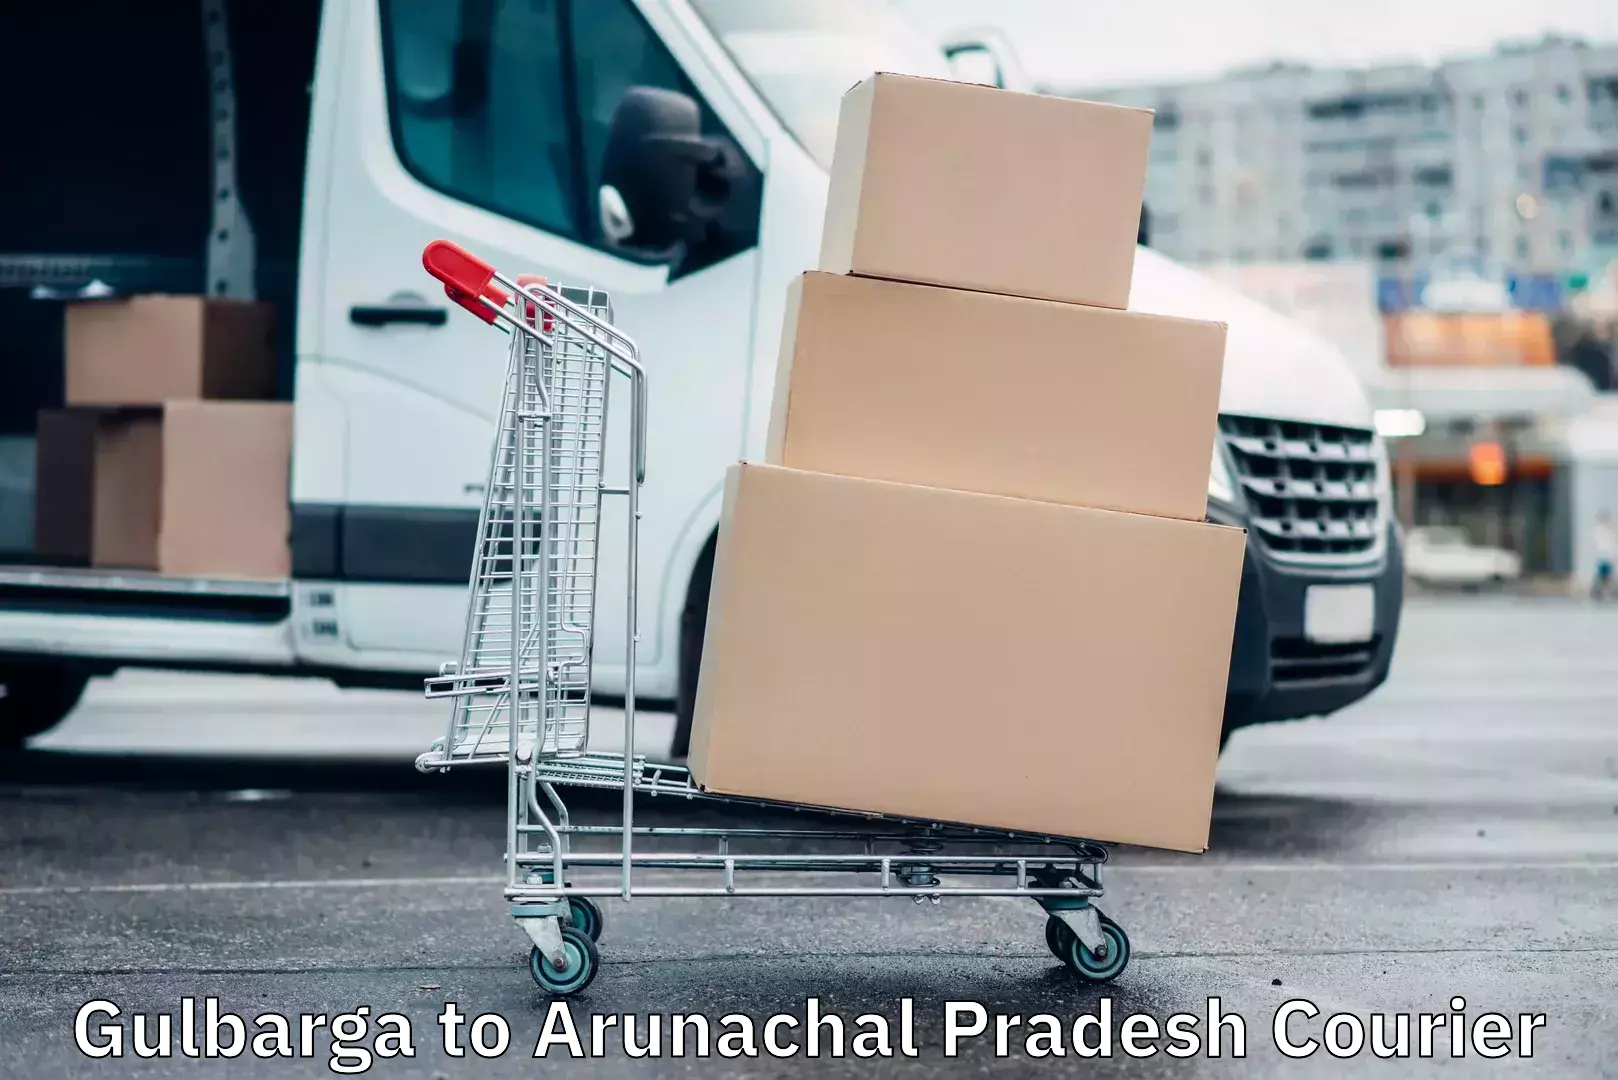 User-friendly delivery service Gulbarga to Arunachal Pradesh